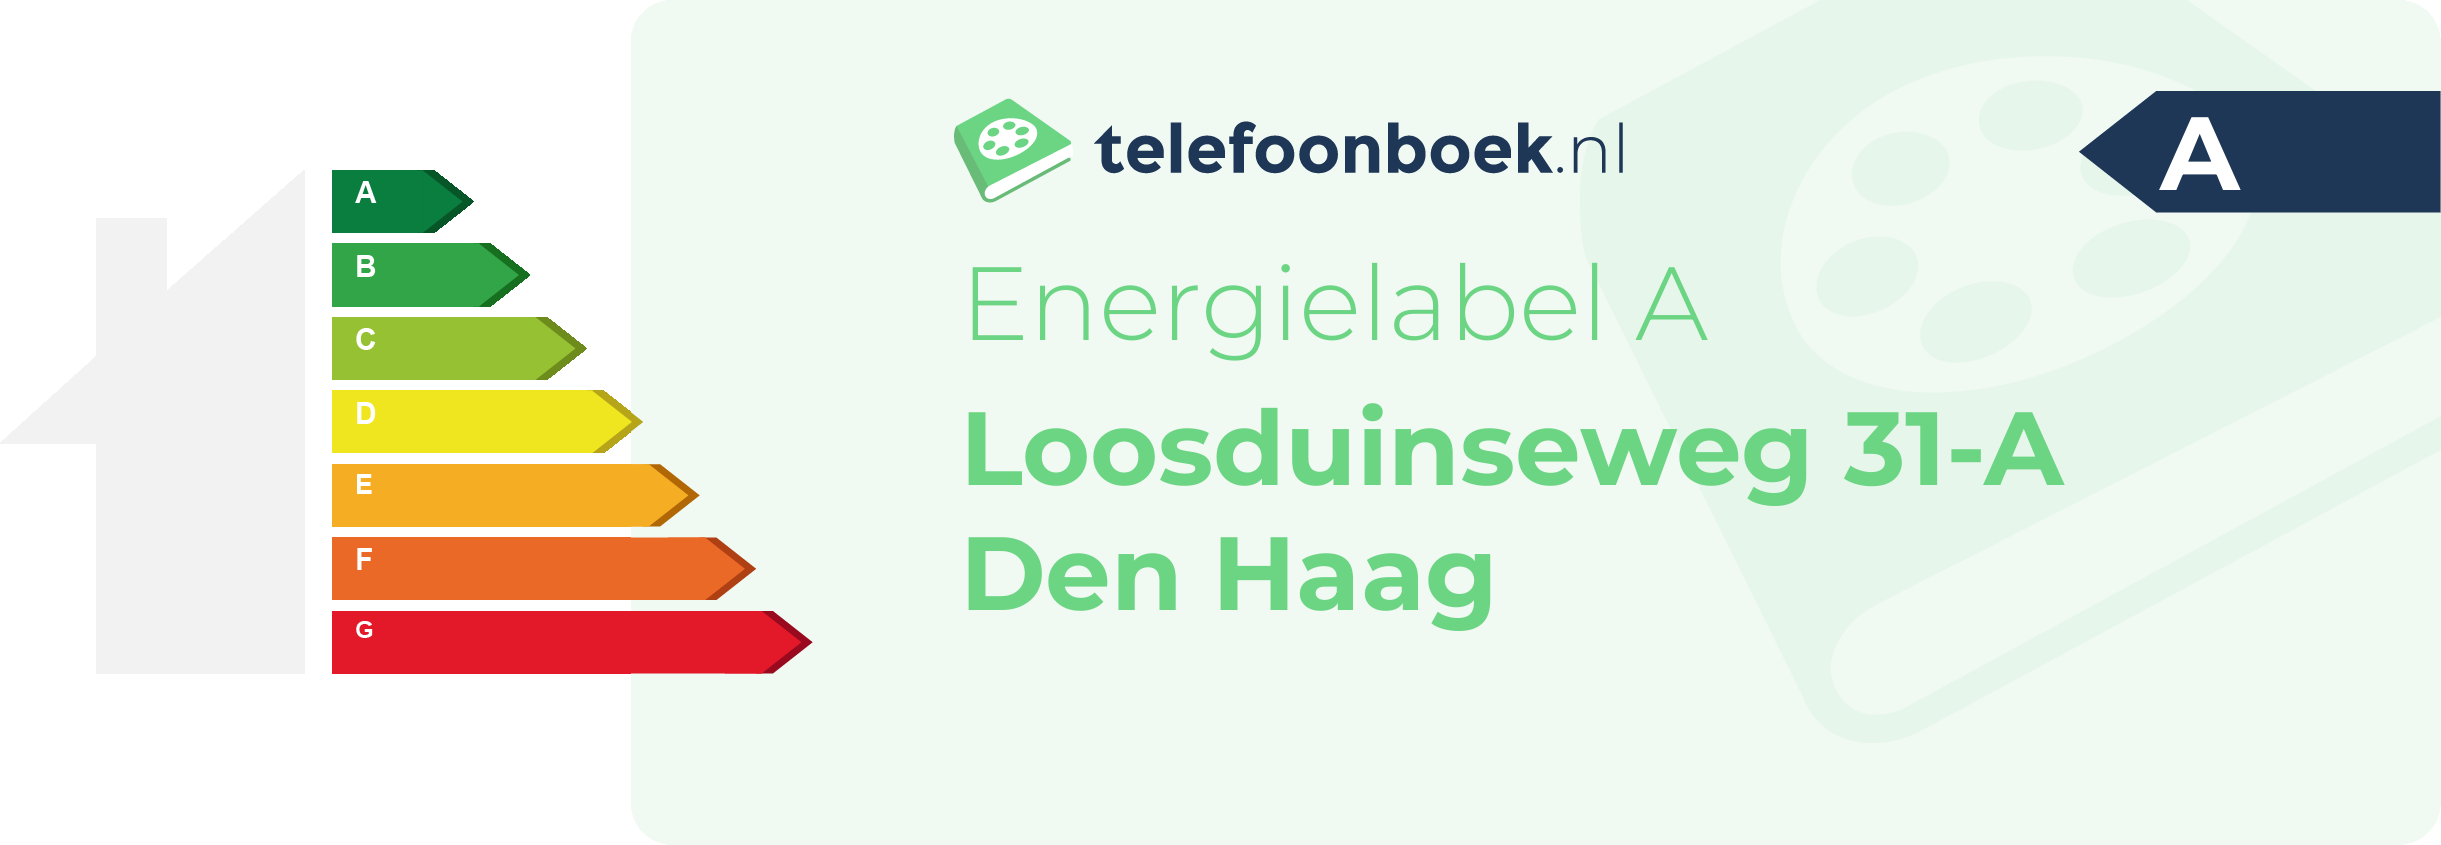 Energielabel Loosduinseweg 31-A Den Haag